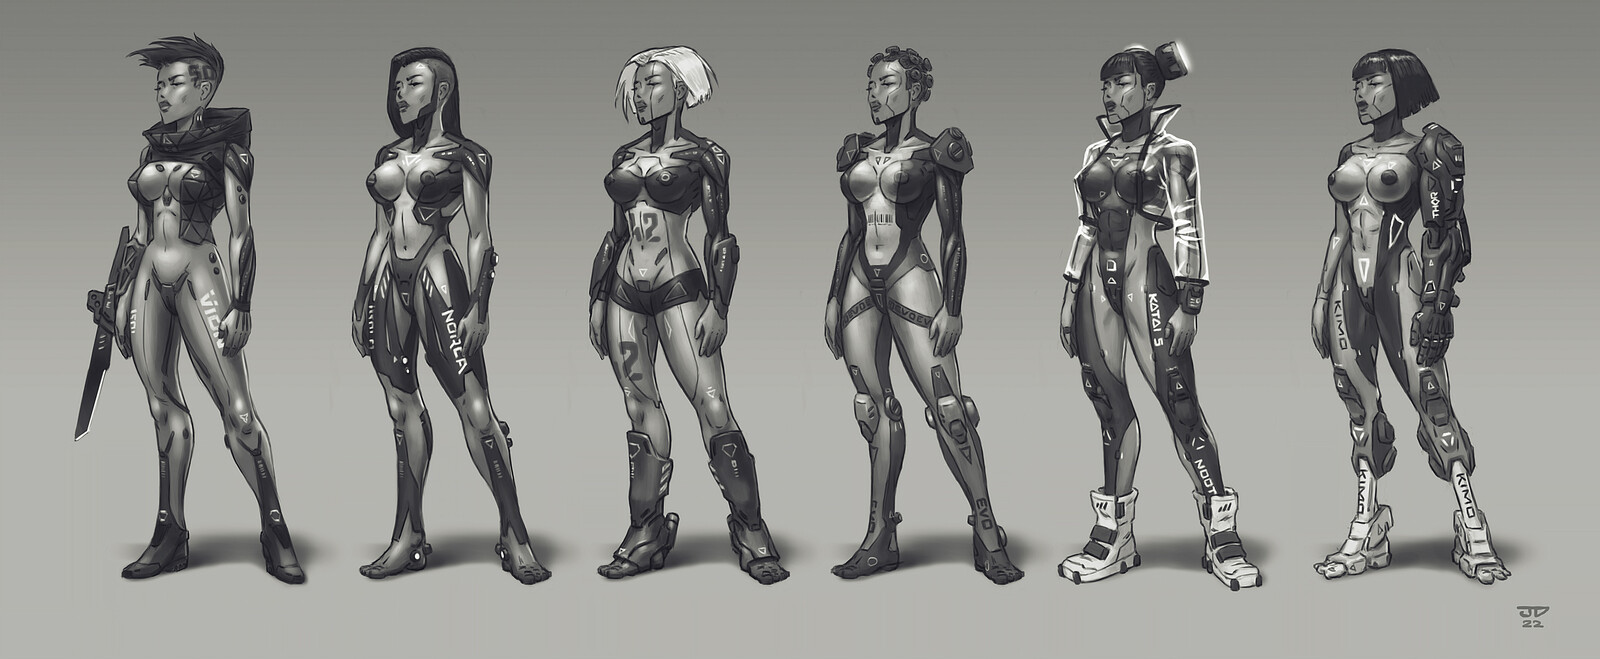 Cyberpunk characters